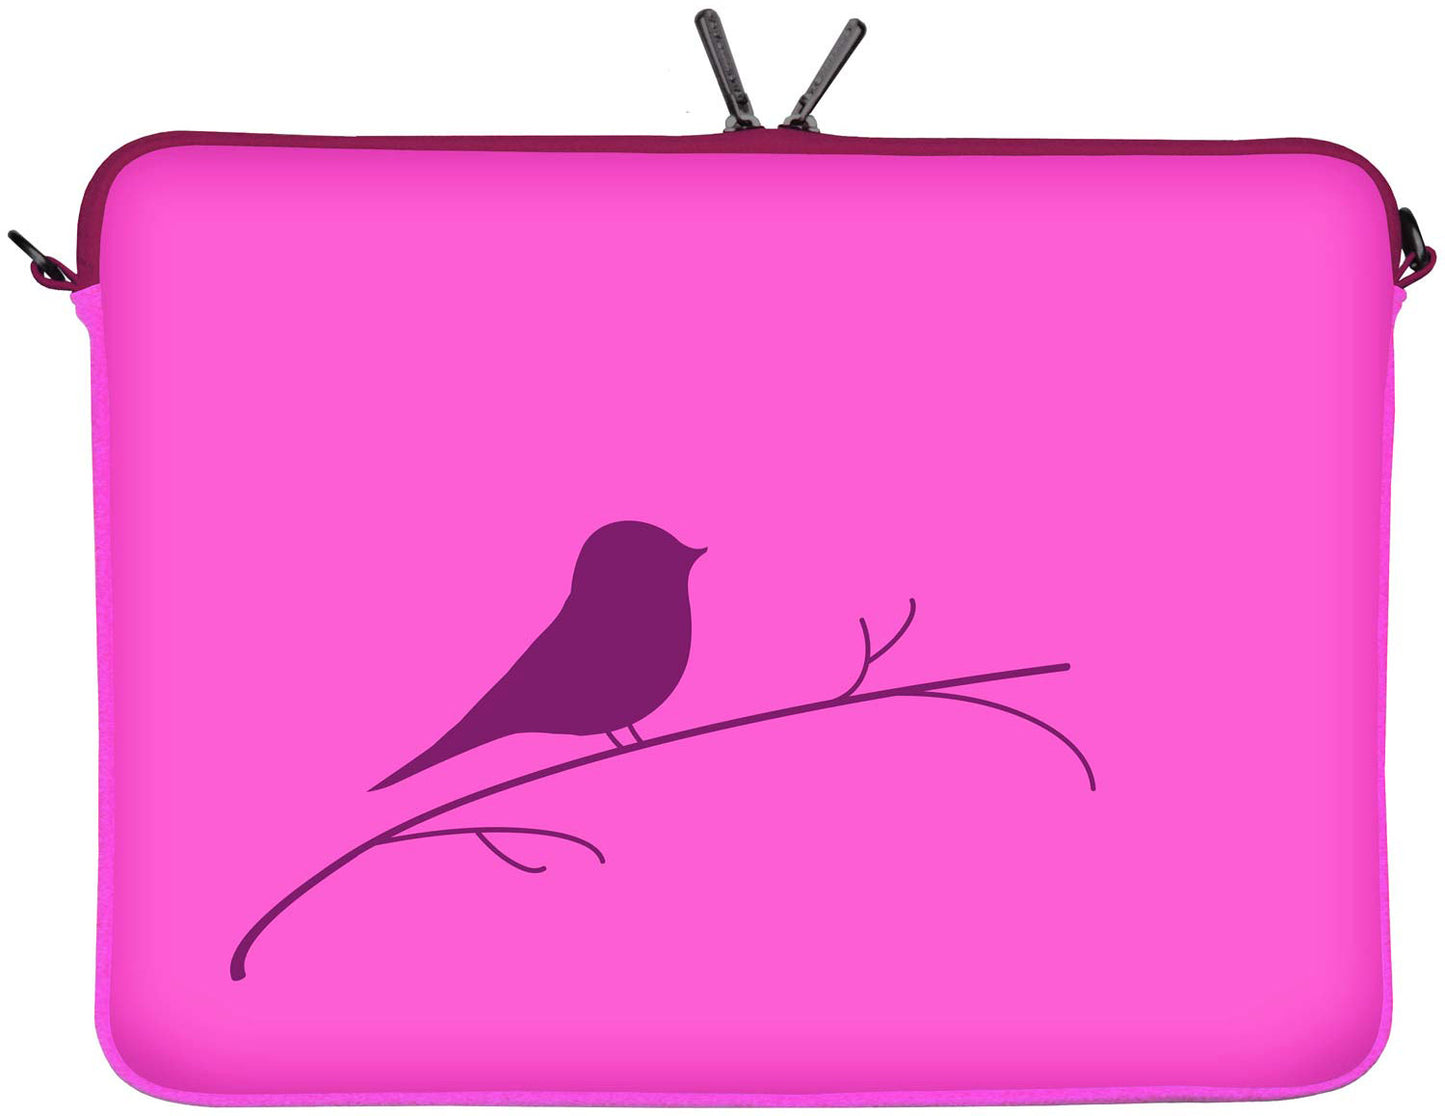 LS122 Early Bird Designer Laptop Tasche in pink für Tablets, Laptops und Macbooks